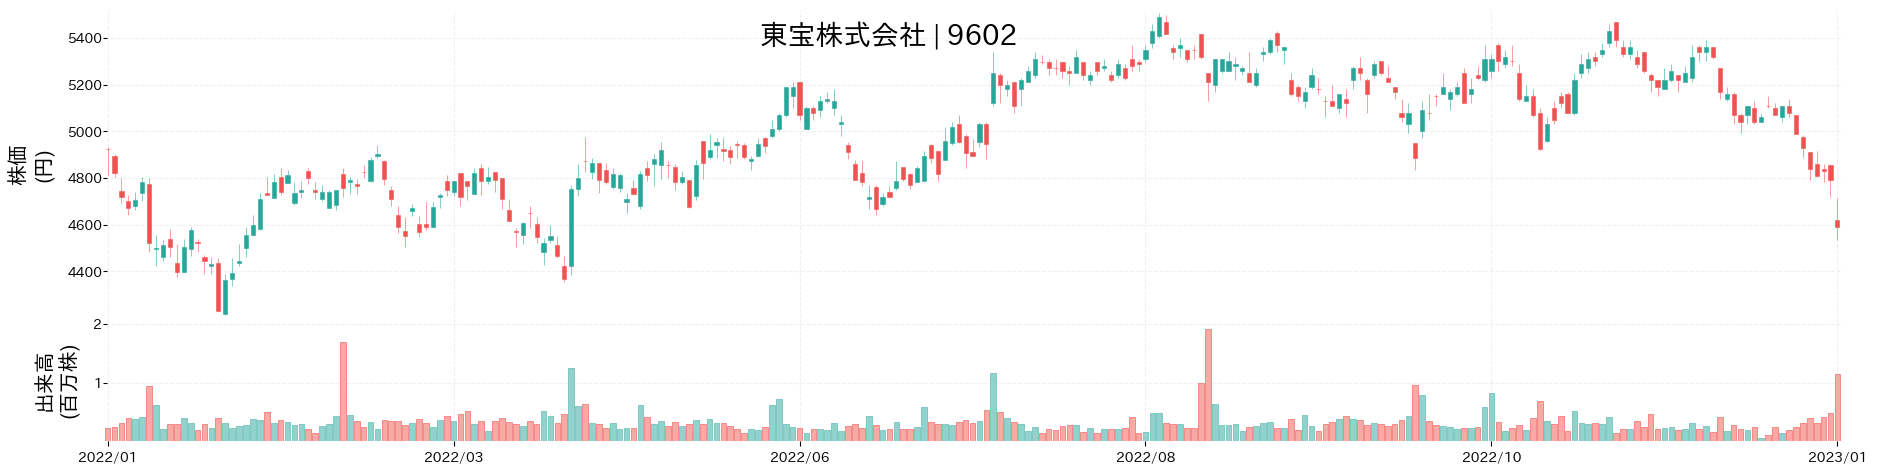 東宝の株価推移(2022)